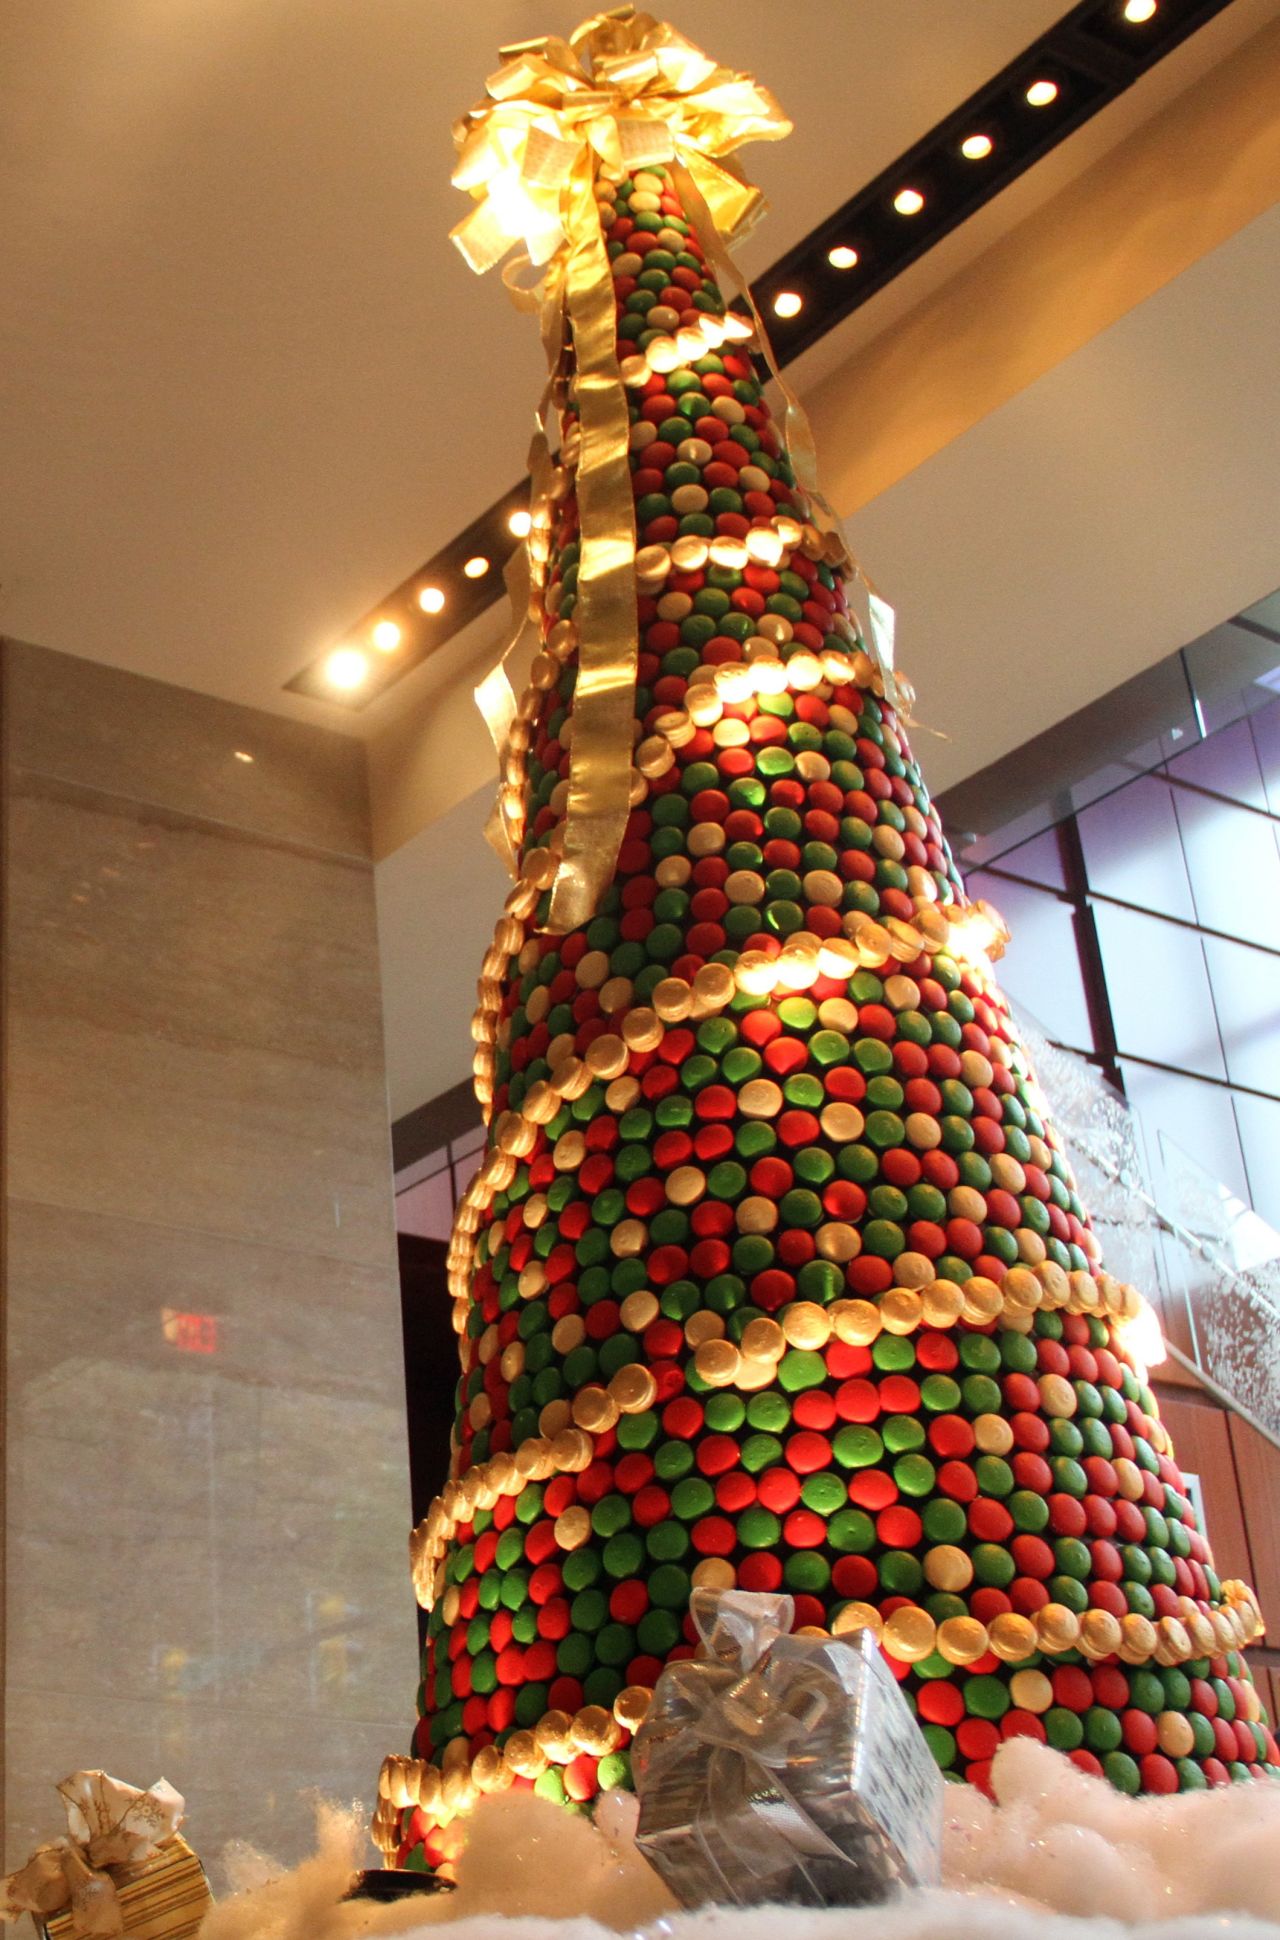 El equipo pastelero del hotel Ritz-Carlton en Charlotte, Carolina del Norte, tardó 58 horas en crear este árbol de Navidad con 8.000 postres.